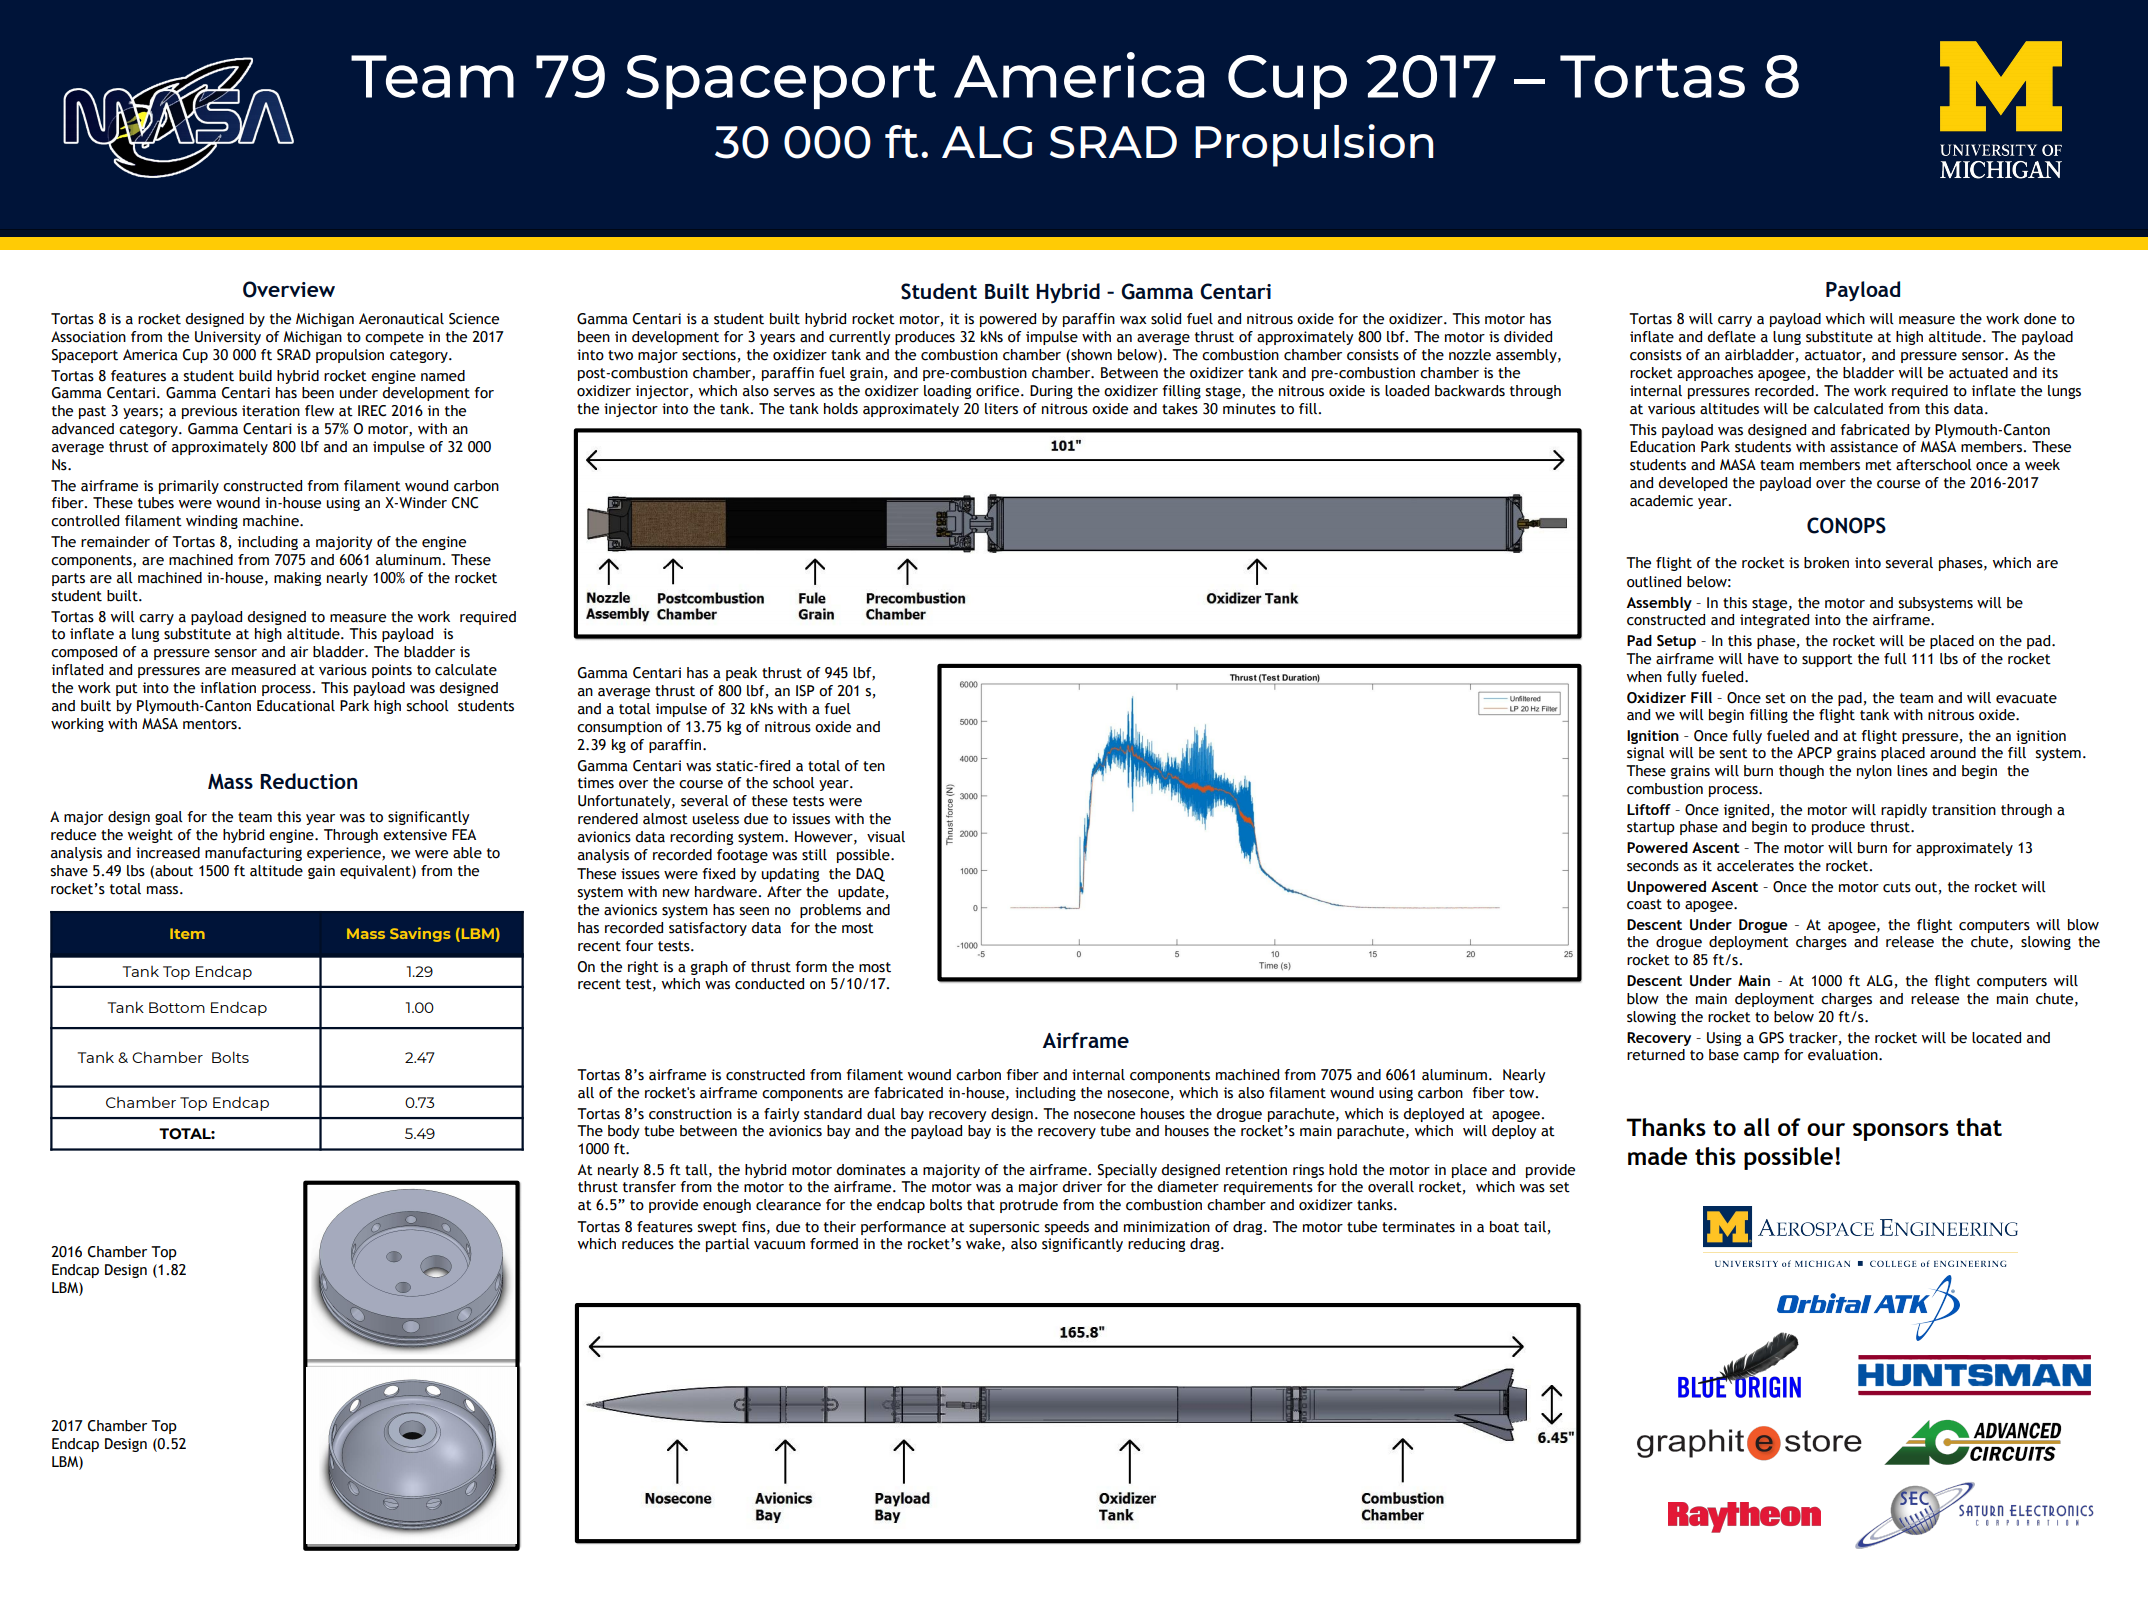 Spaceport America Cup Team 79 Poster - Tortas 8